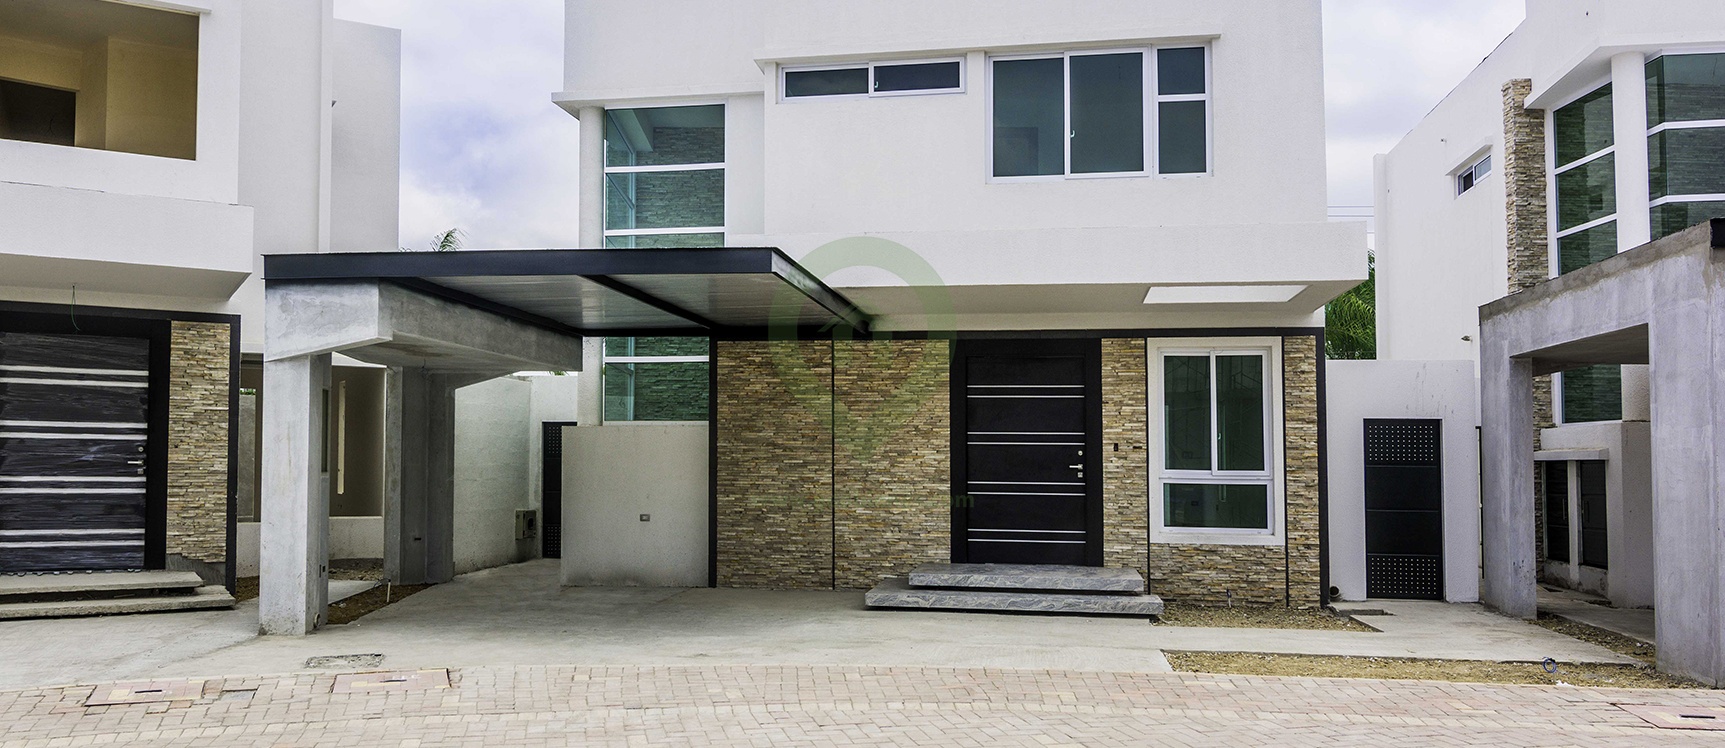 GeoBienes - Casa en venta Villa 3 en Mocolí Gardens en Vía a Samborondón - Plusvalia Guayaquil Casas de venta y alquiler Inmobiliaria Ecuador